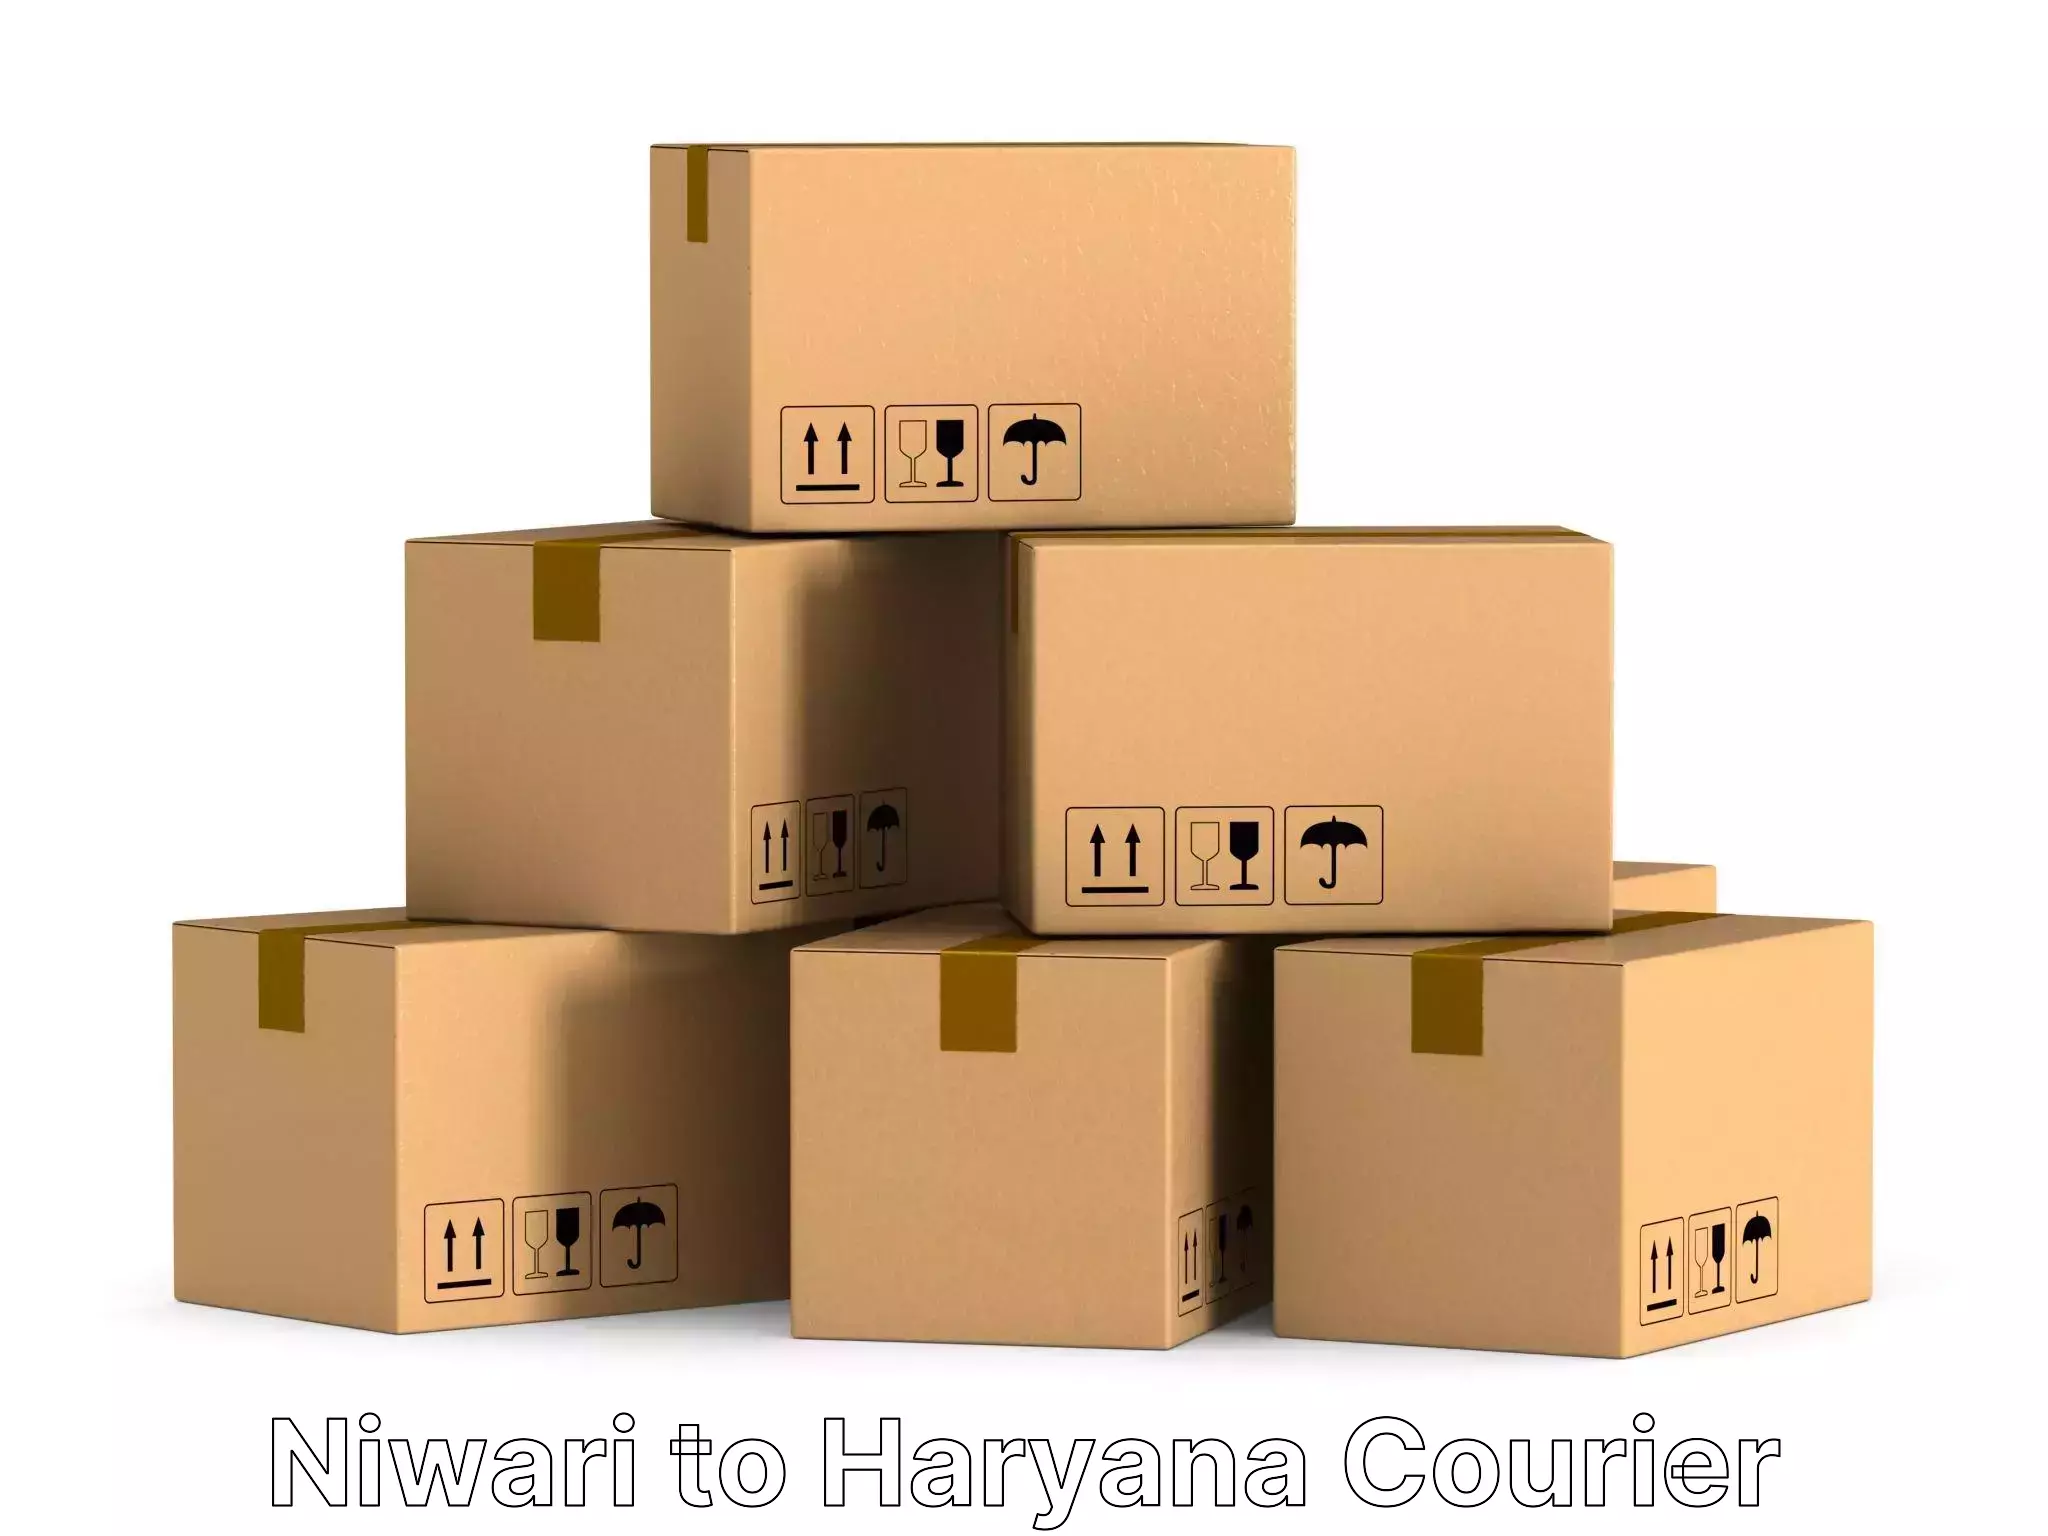 Furniture moving service Niwari to NCR Haryana